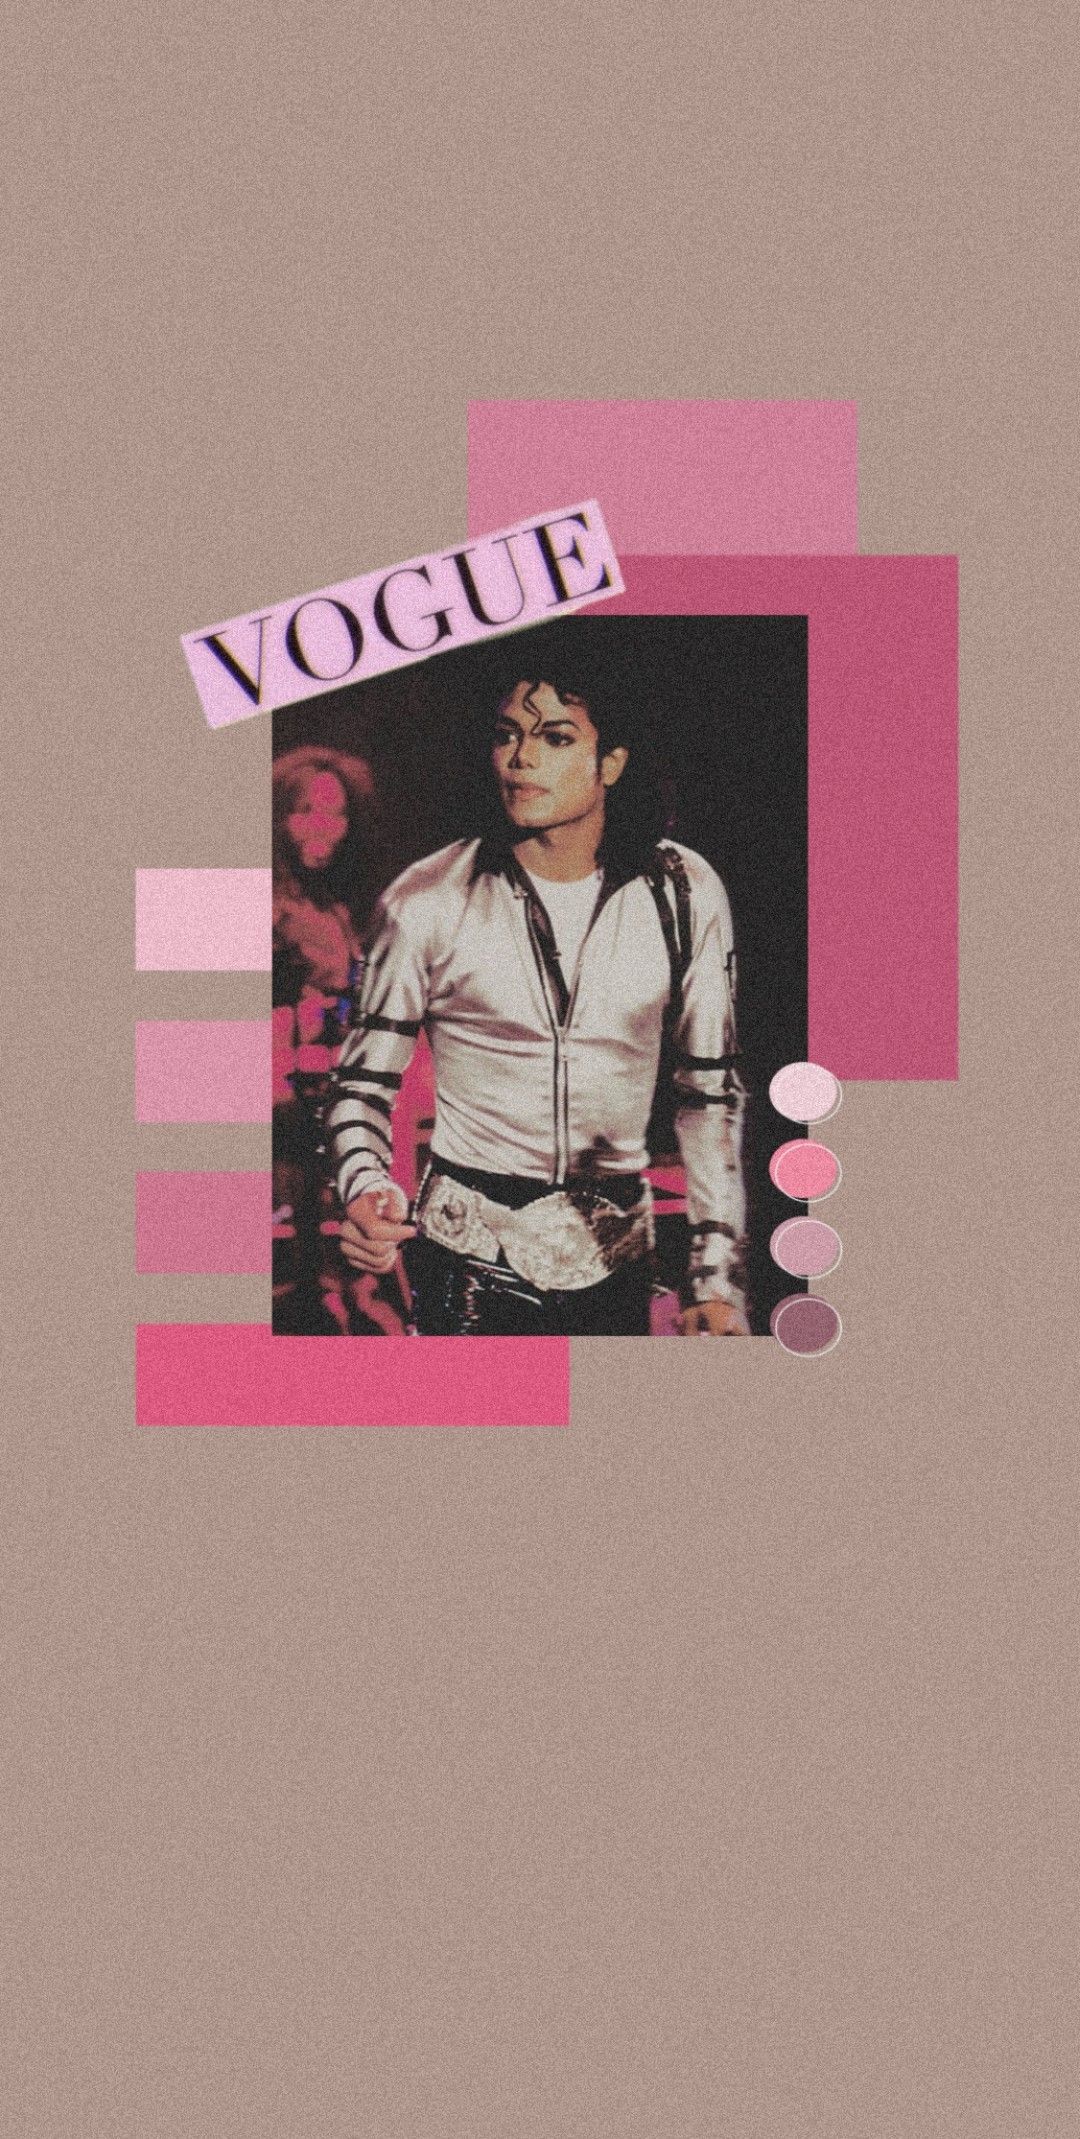 Michael Jackson. Michael jackson poster, Michael jackson wallpaper, Michael jackson photohoot